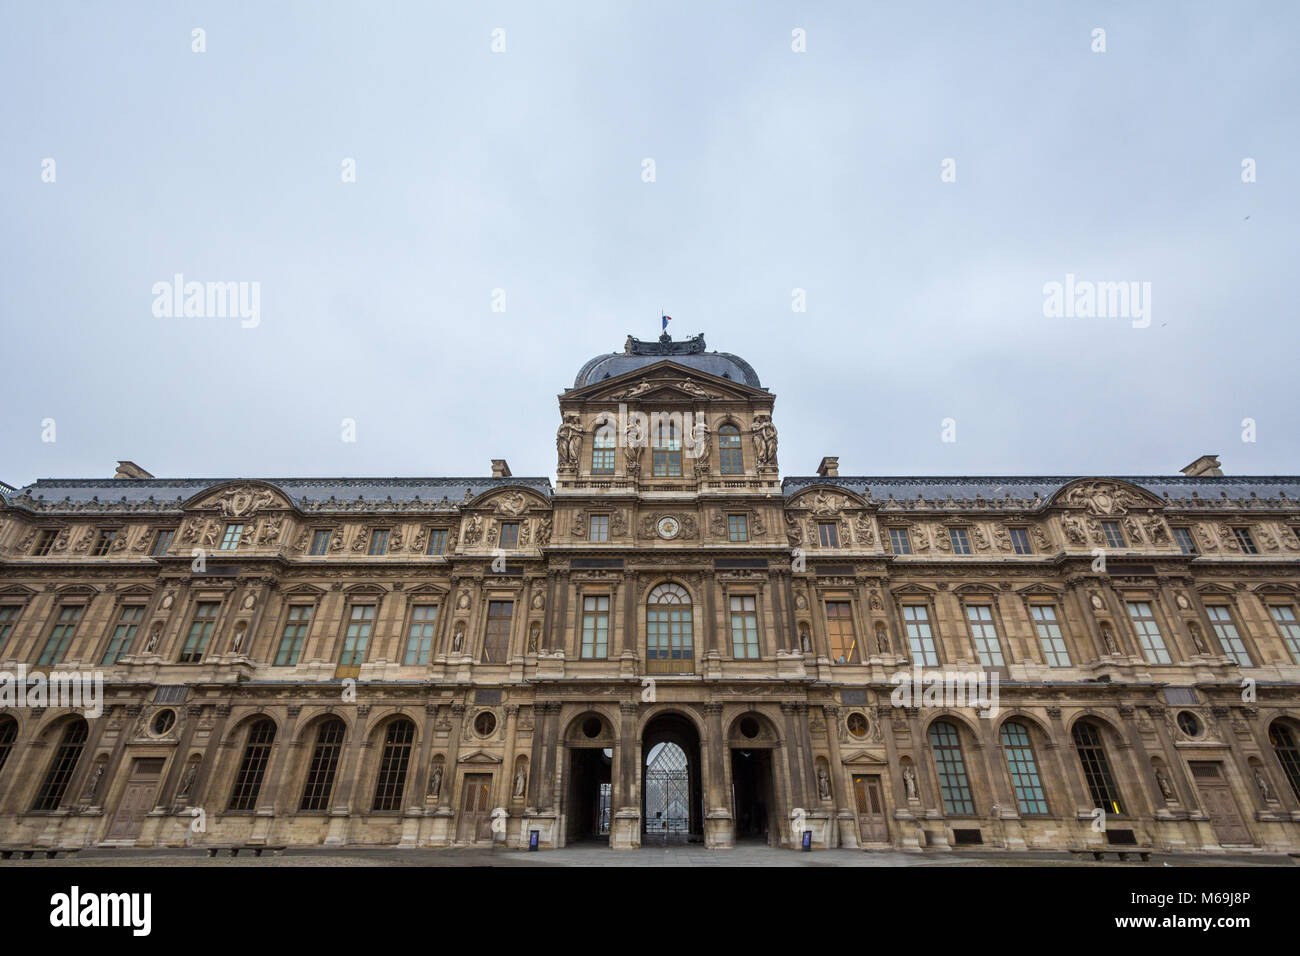 Innenhof des Louvre (Palais du Louvre) in Paris, Frankreich, während einem bewölkten Nachmittag genommen. Diese ehemalige königliche Palast ist heute einer der größten Ar Stockfoto